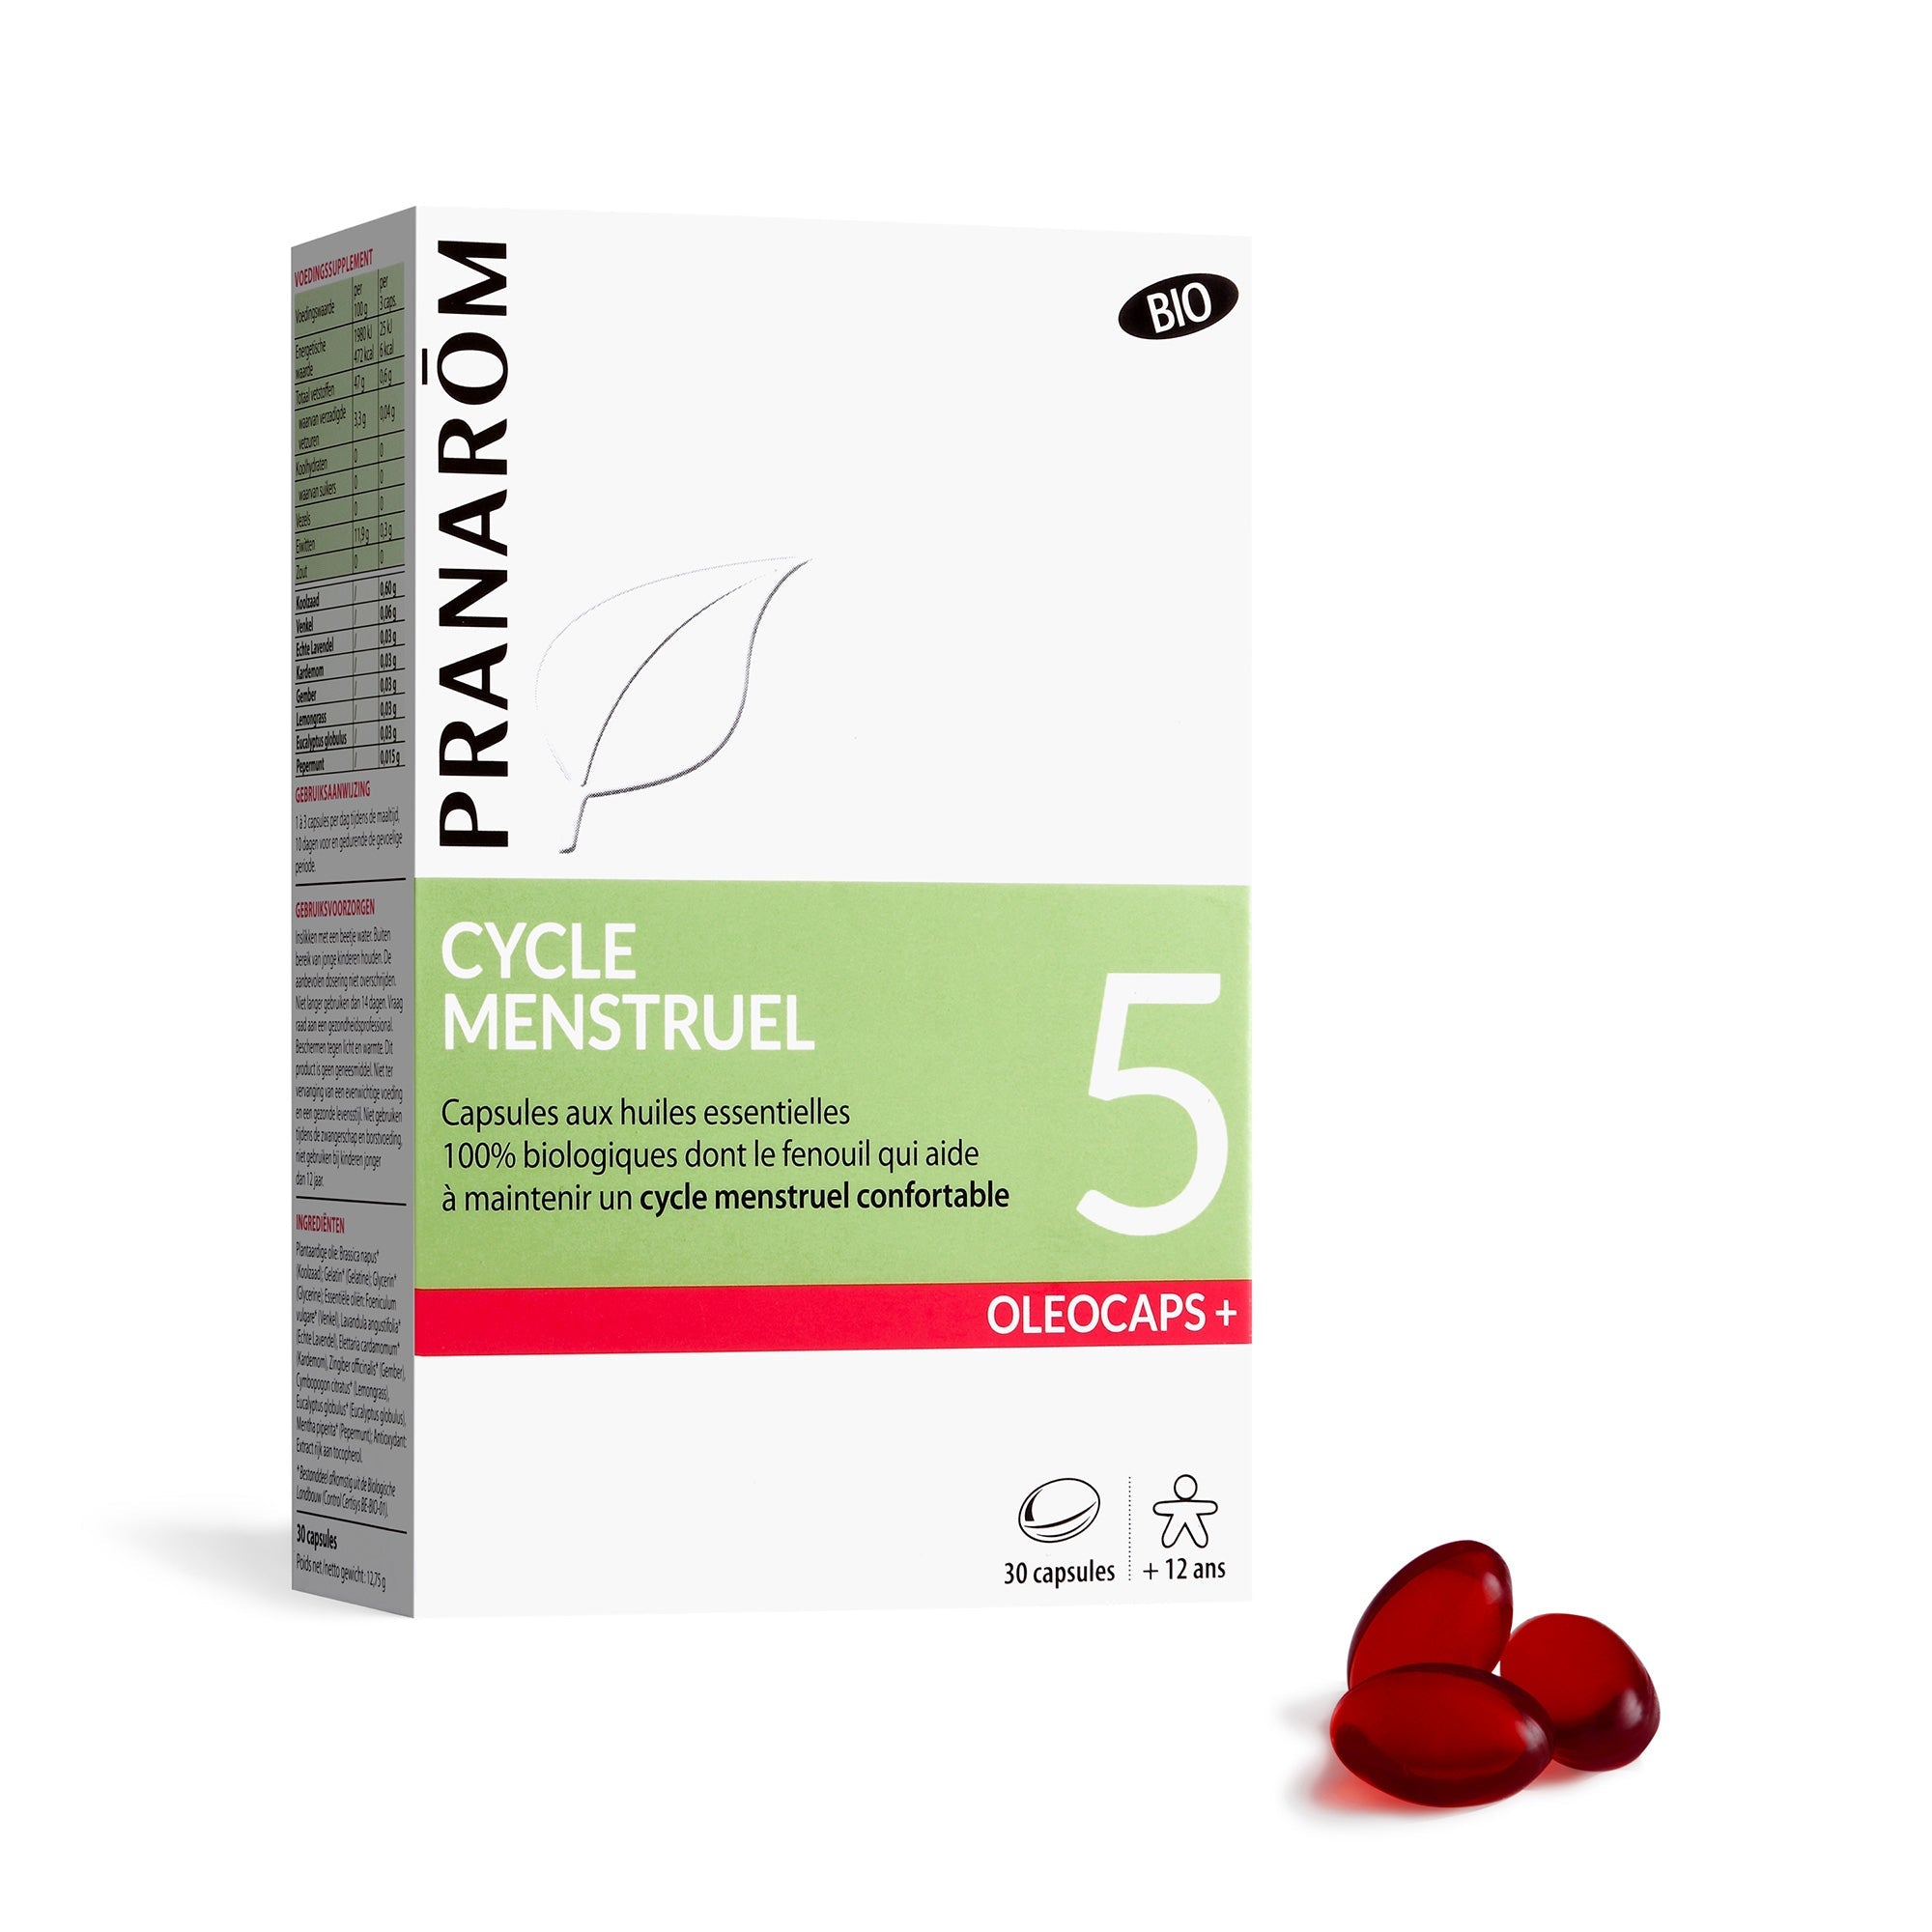 5 - Cycle menstruel - Bio